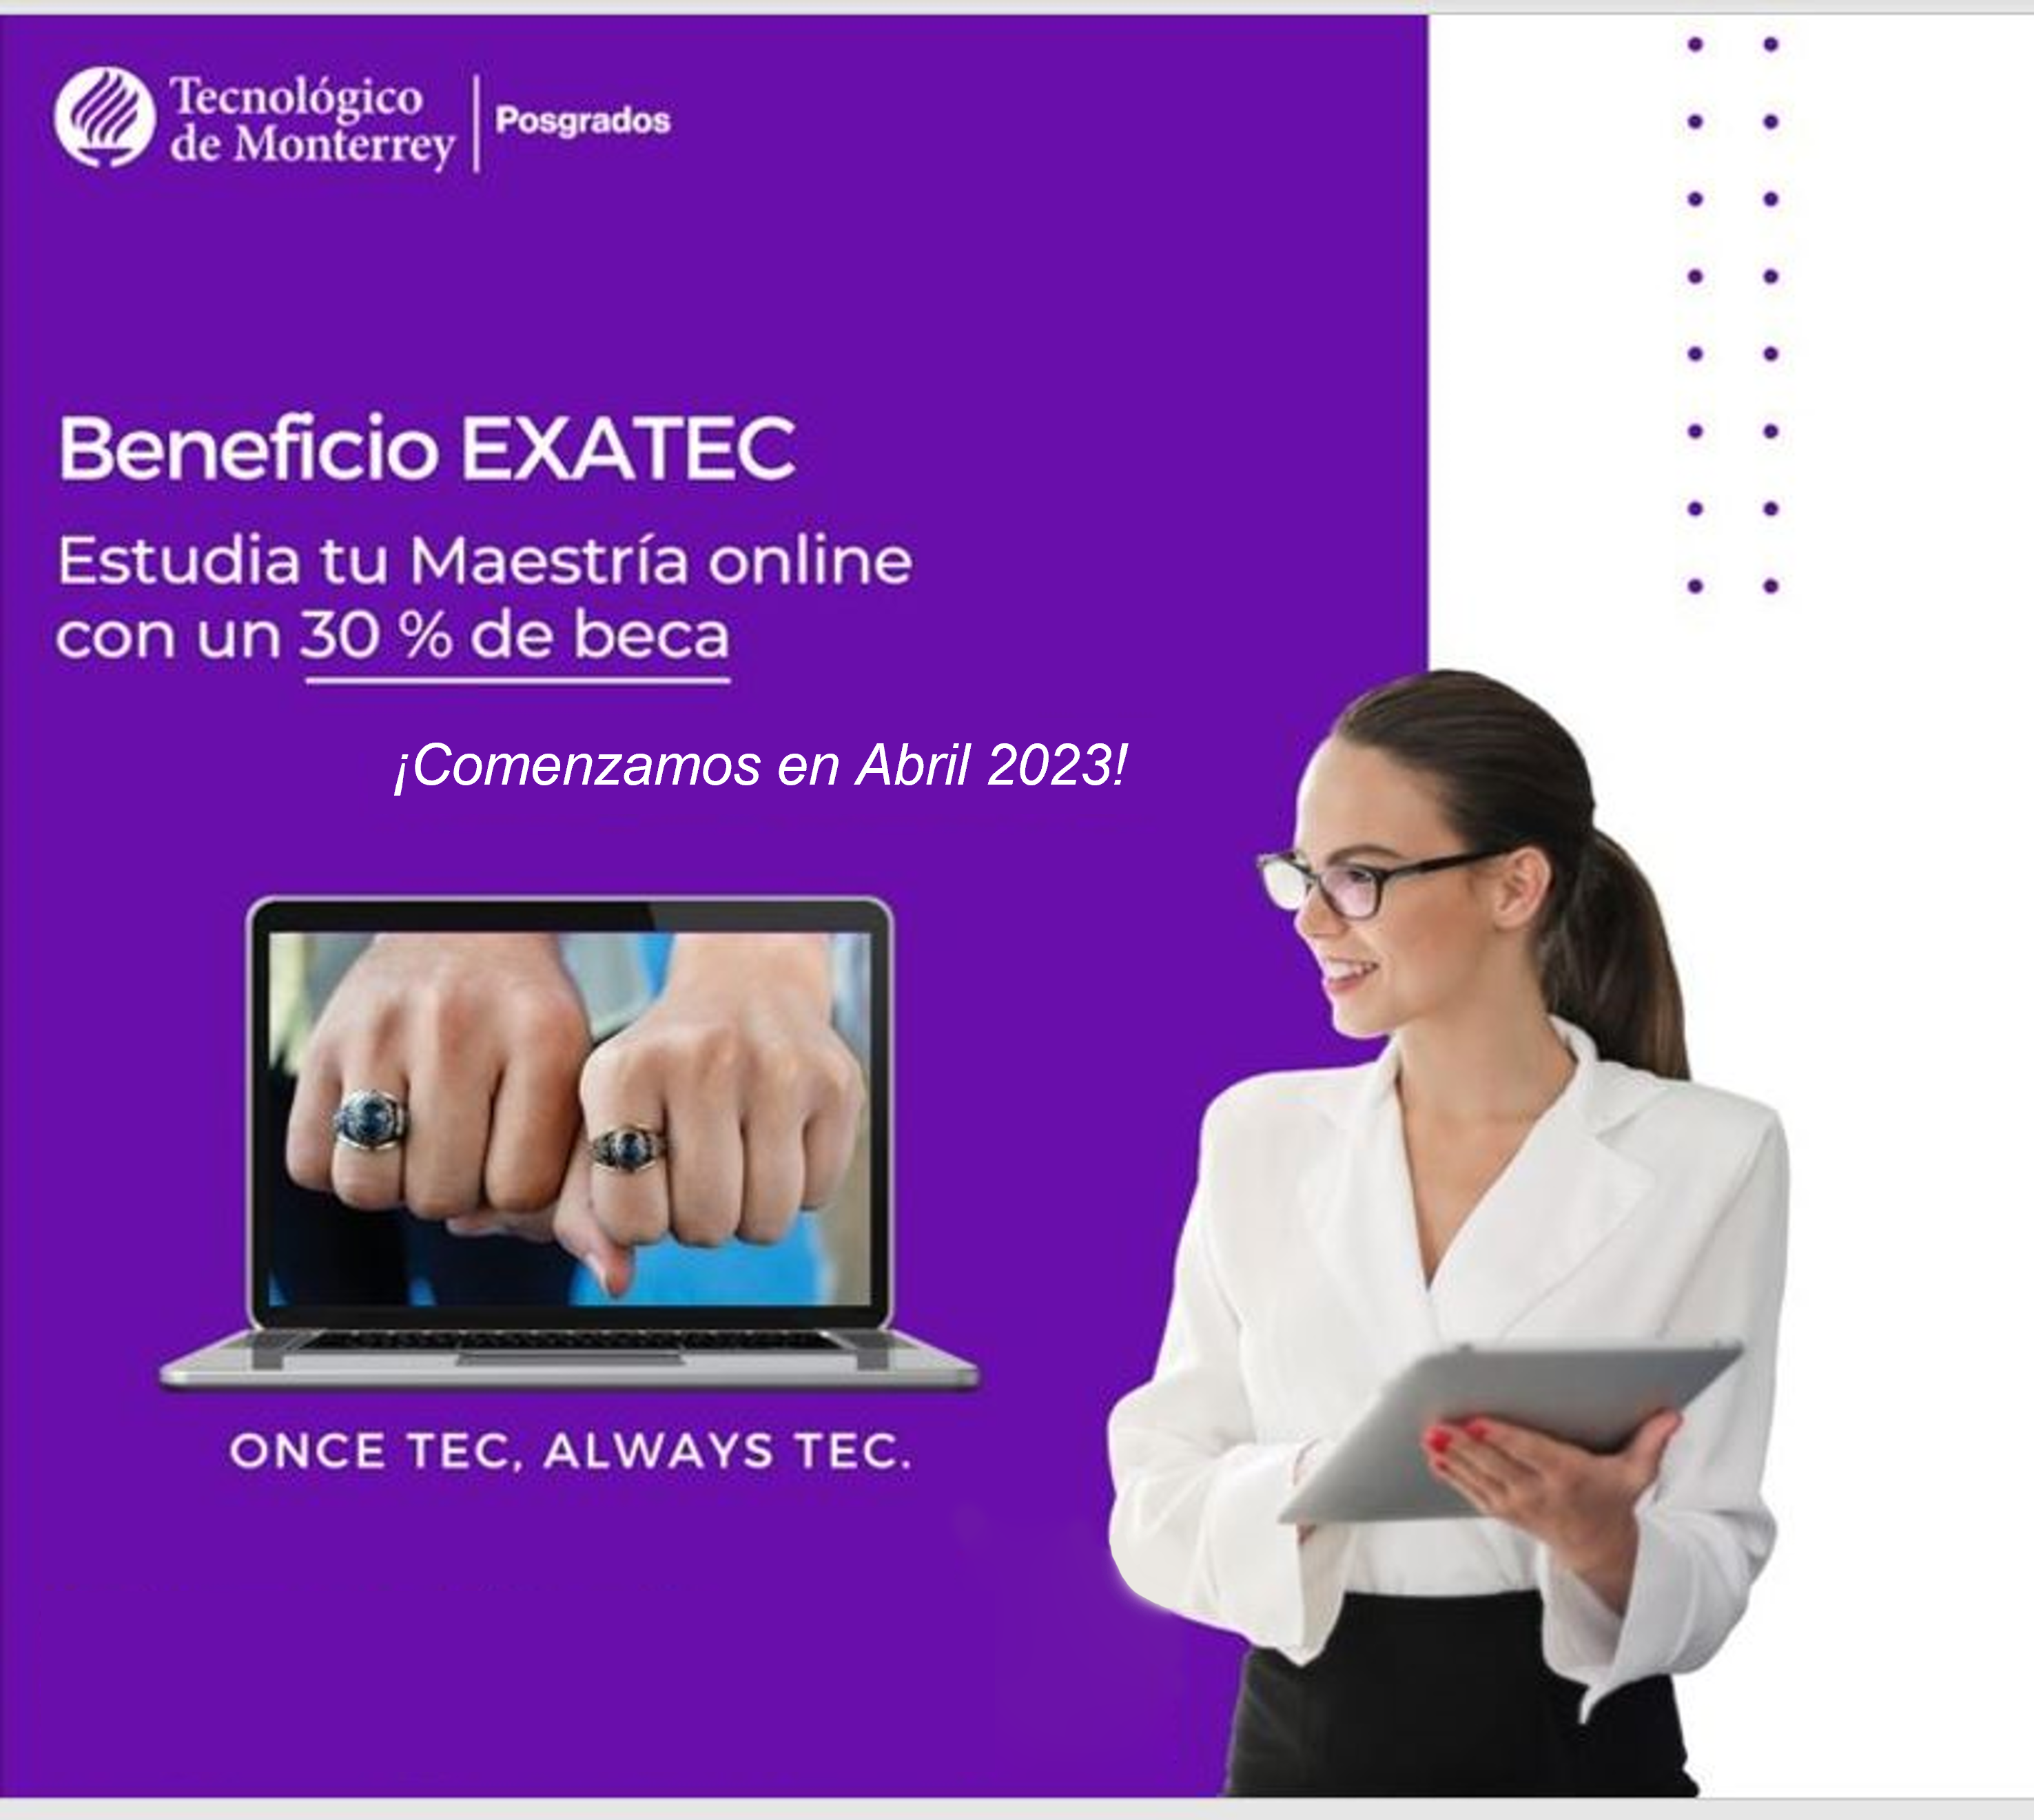 Estudia tu Maestría en línea con beca | Beneficio EXATEC San Luis Potosí